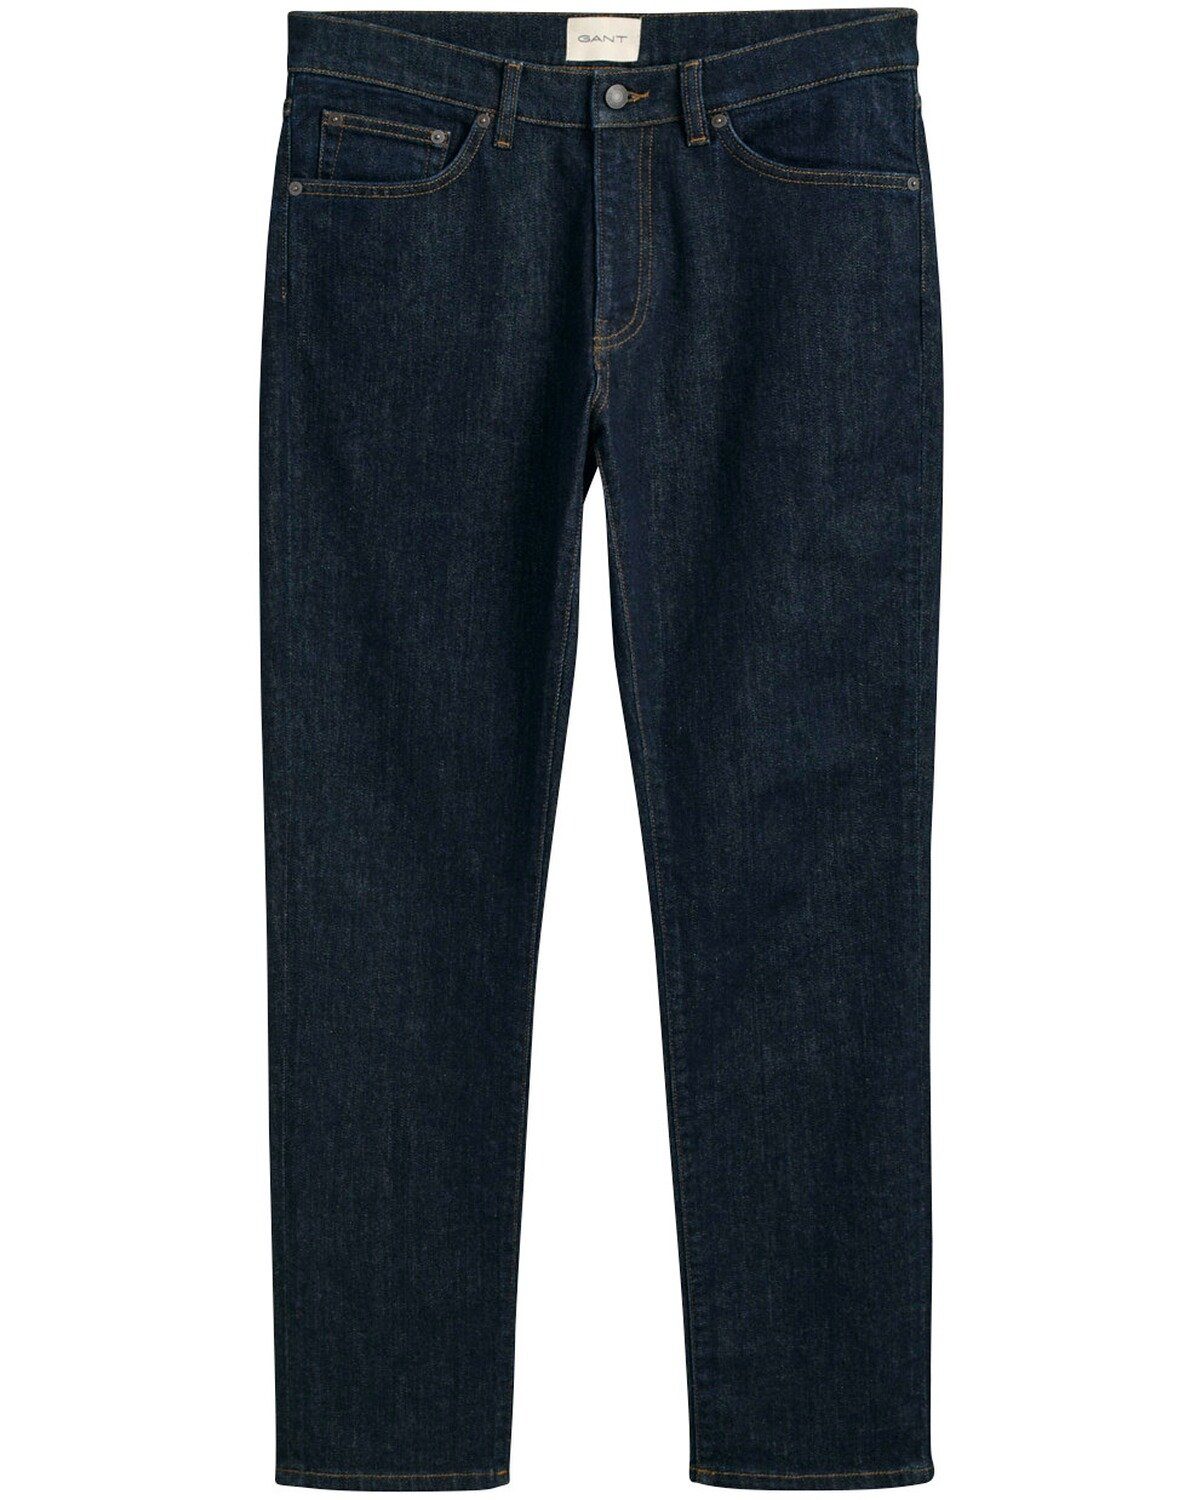 Gant 5-Pocket-Jeans Jeans Slim Fit Dunkelblau